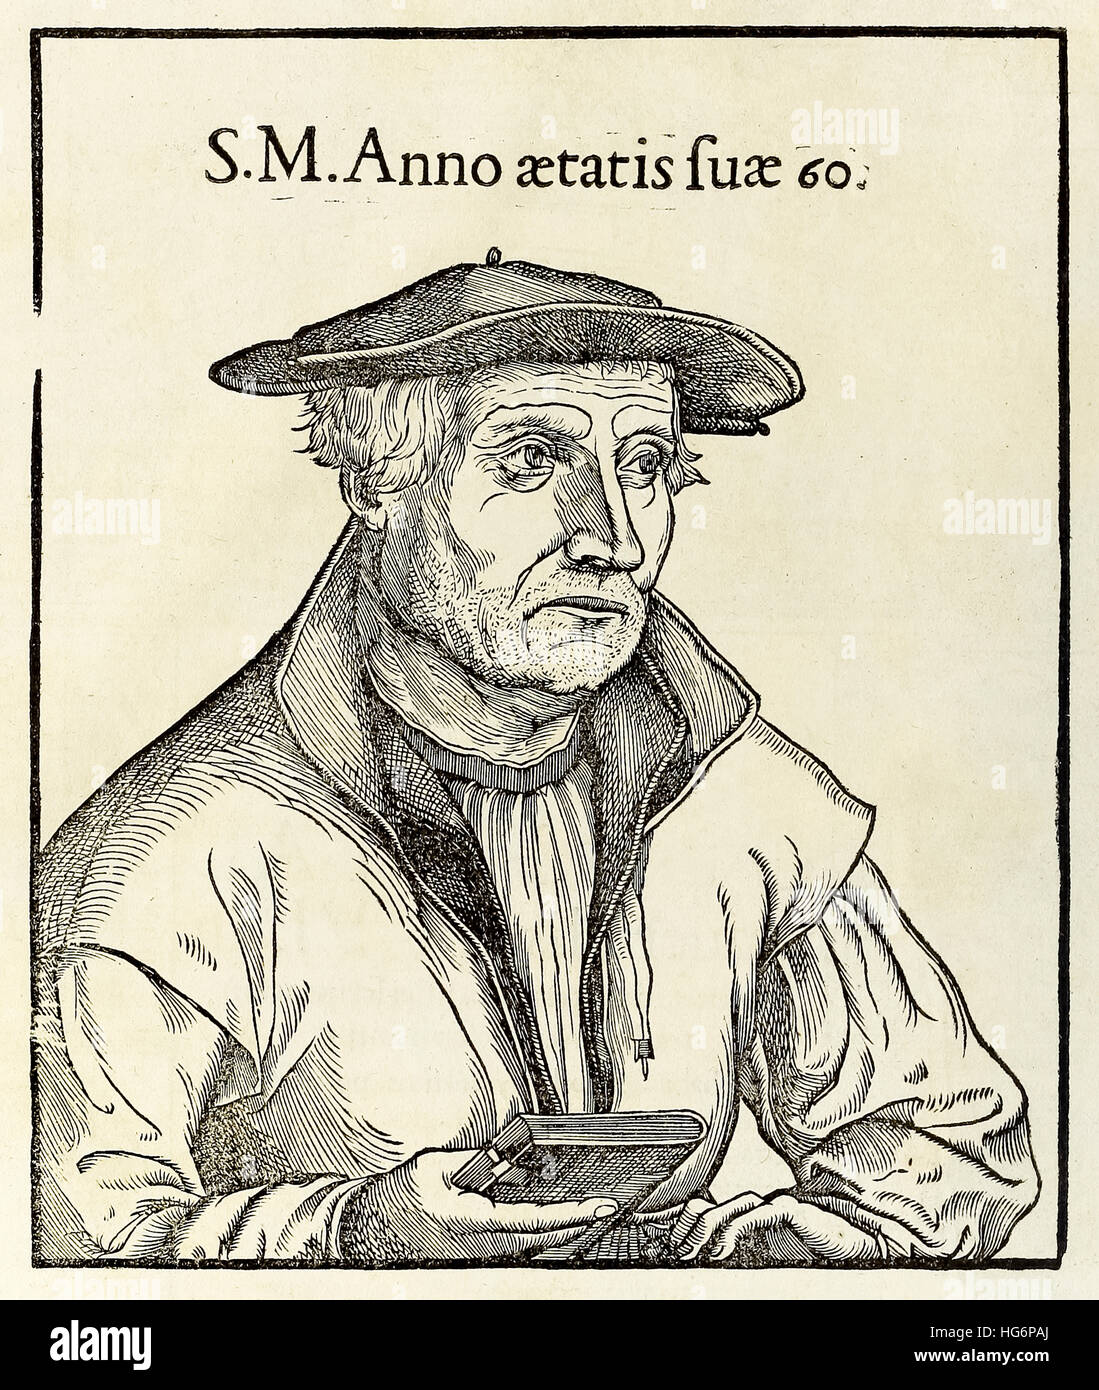 Holzschnitt-Porträt von Sebastian Münster (1488-1552) aus einer 1550-Edition von seiner "Cosmographia". Siehe Beschreibung für mehr Informationen. Stockfoto